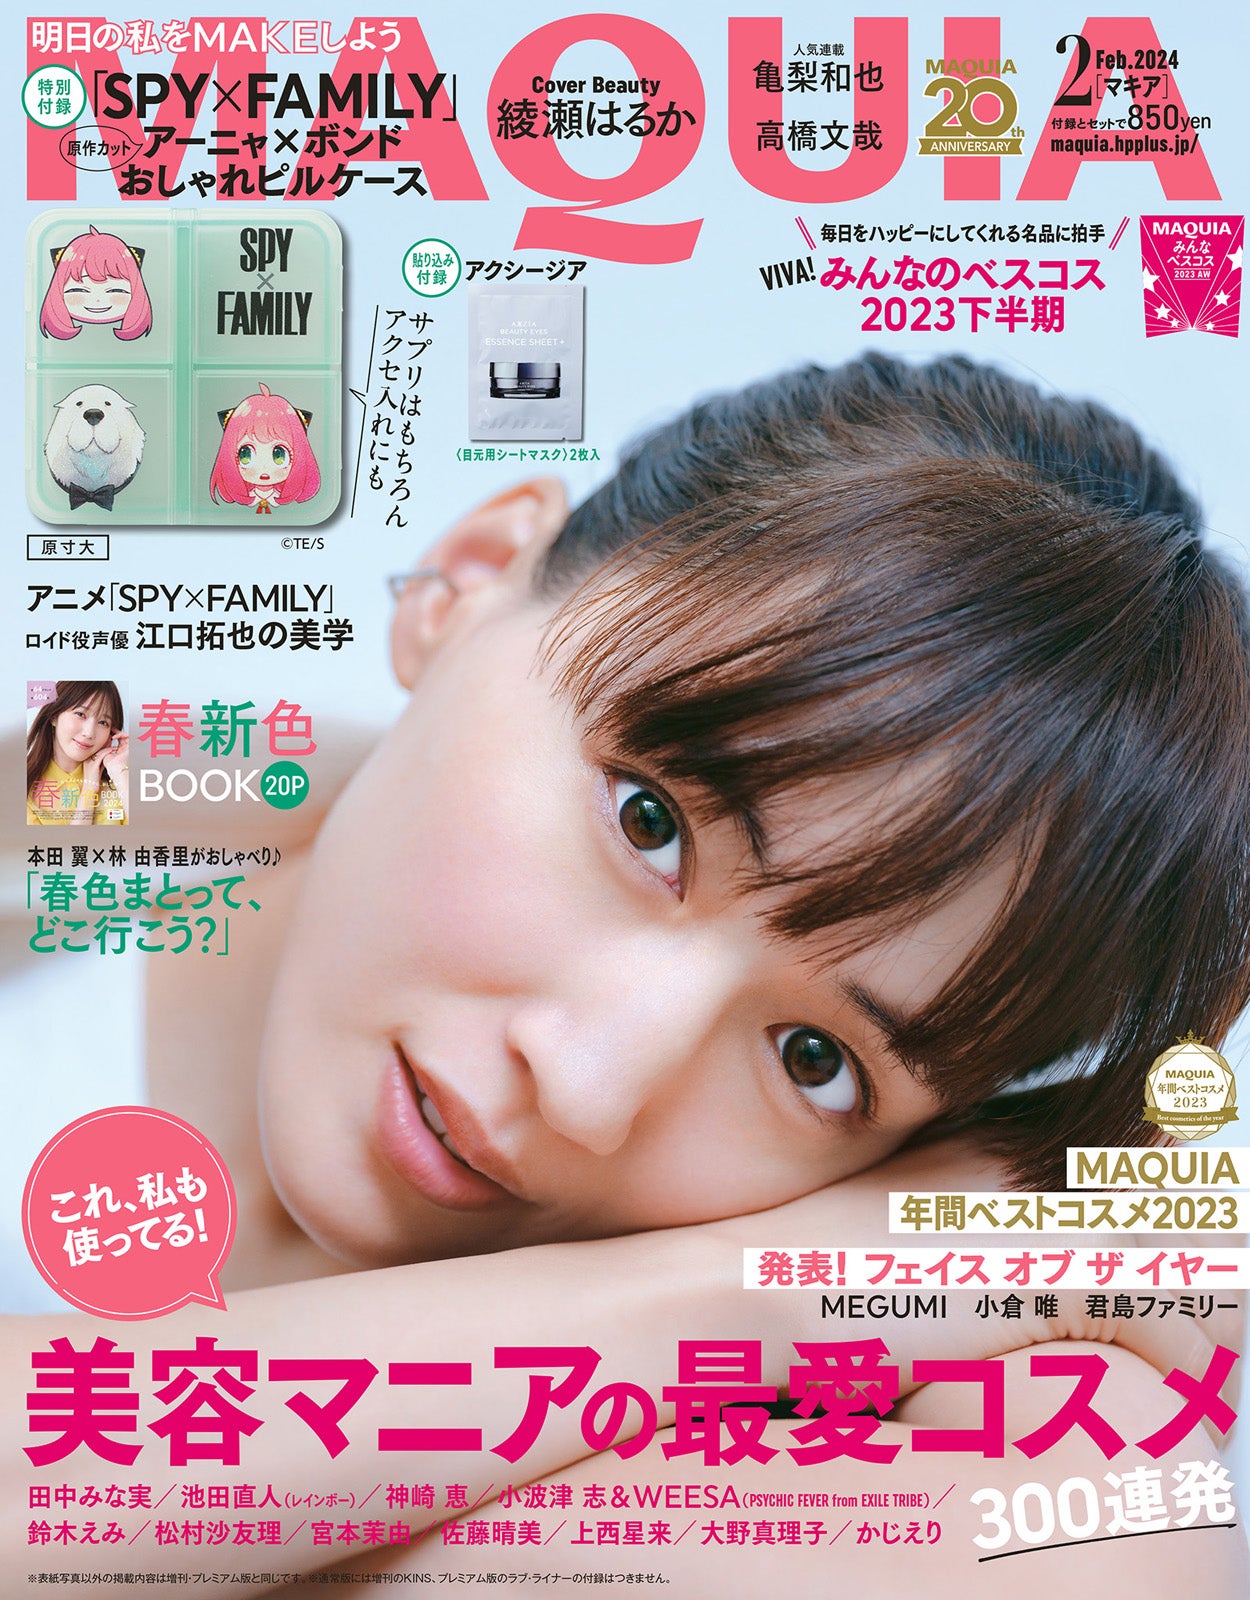 綾瀬はるか、年を重ねて実感すること「MAQUIA」3年ぶり表紙で透明美肌披露 - モデルプレス